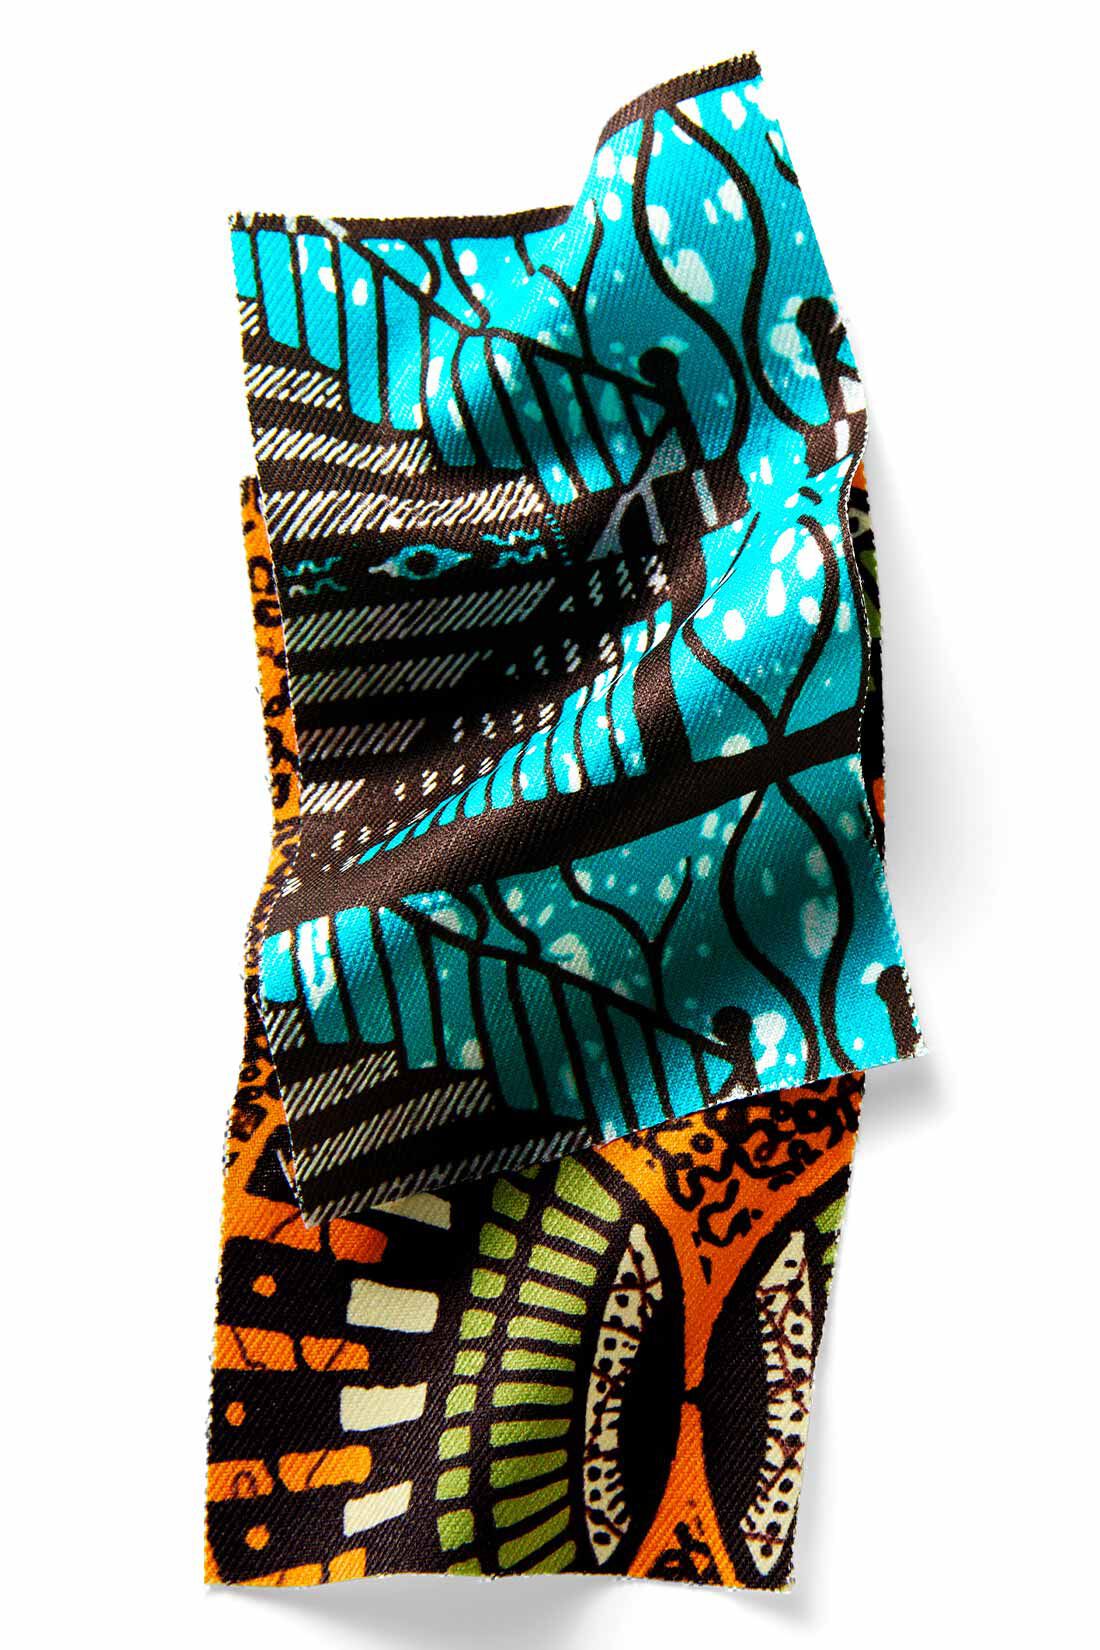 MEDE19F|MEDE19F　アフリカンプリント柄パンツ|しなやかで発色の美しいポリエステル素材。透けがなく、しわも気にならない気軽さが魅力。